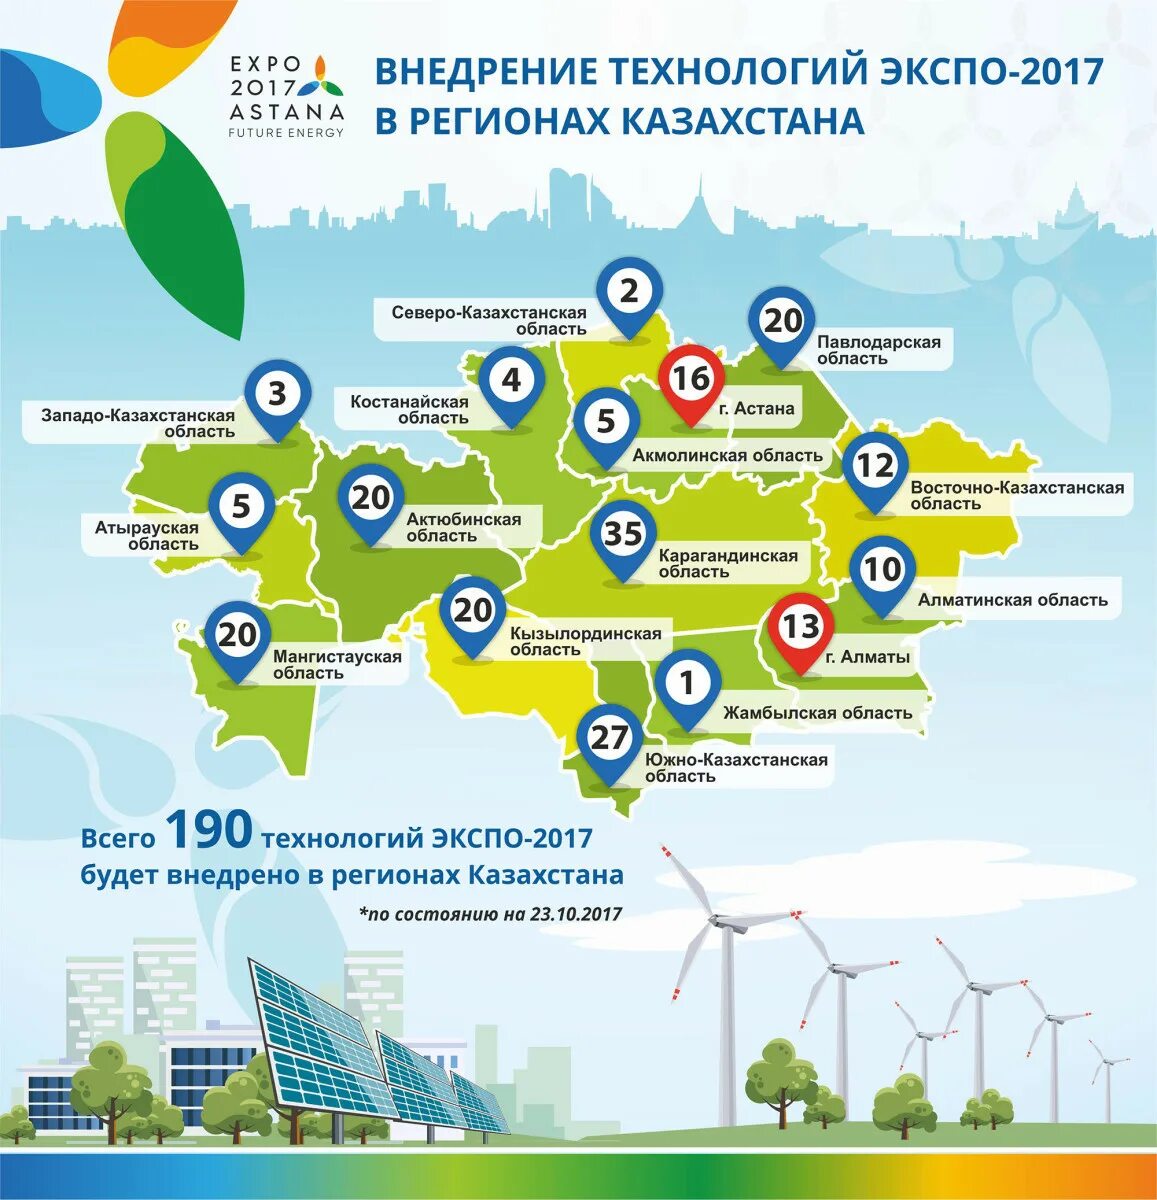 Экономика Казахстана по областям. Инфографика Казахстан. Экспо 2017 технология. Экспо 2017 зеленые технологии.